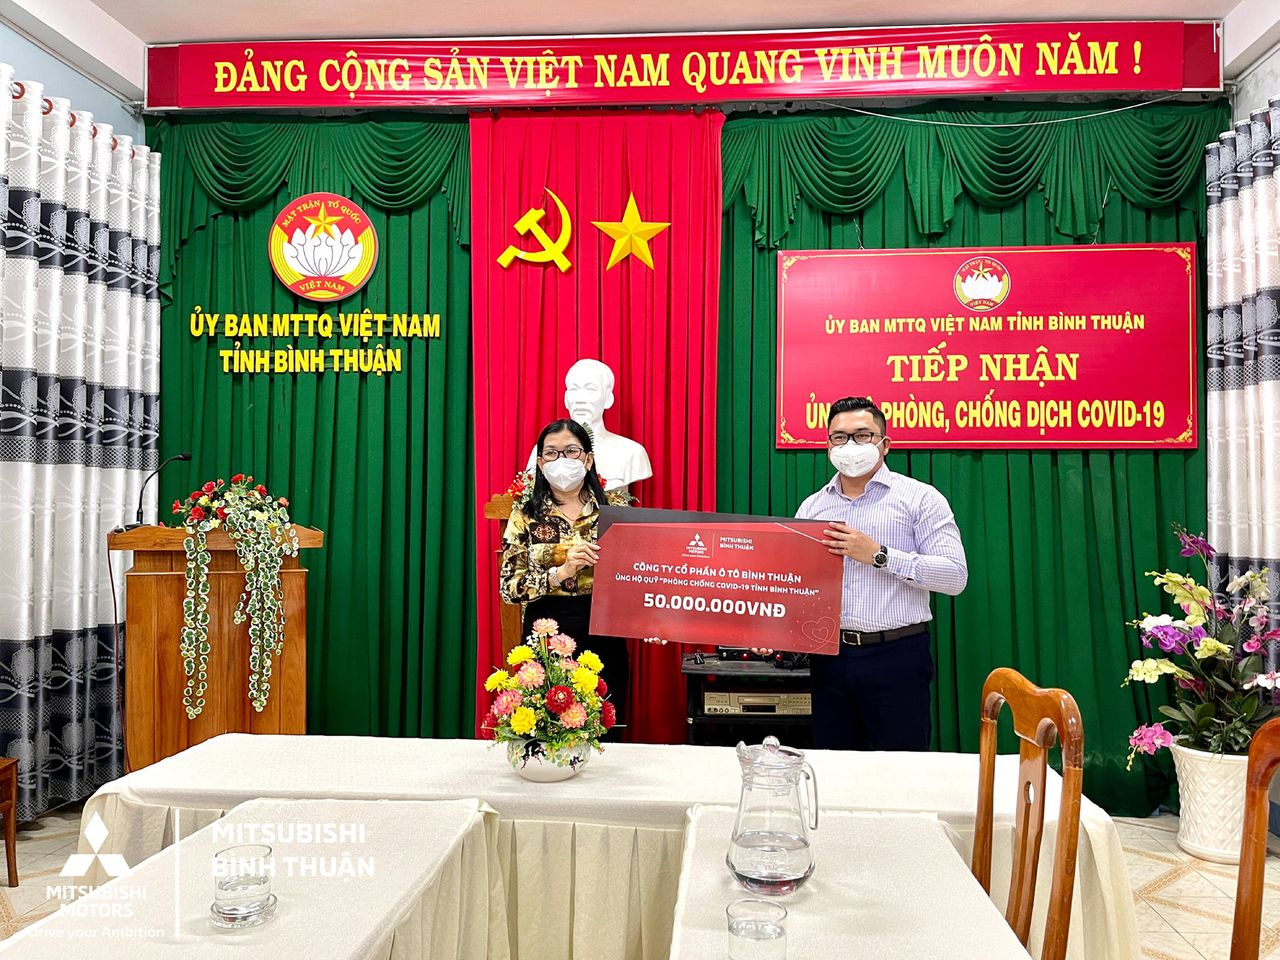 Mitsubishi Bình Thuận ủng hộ Covid